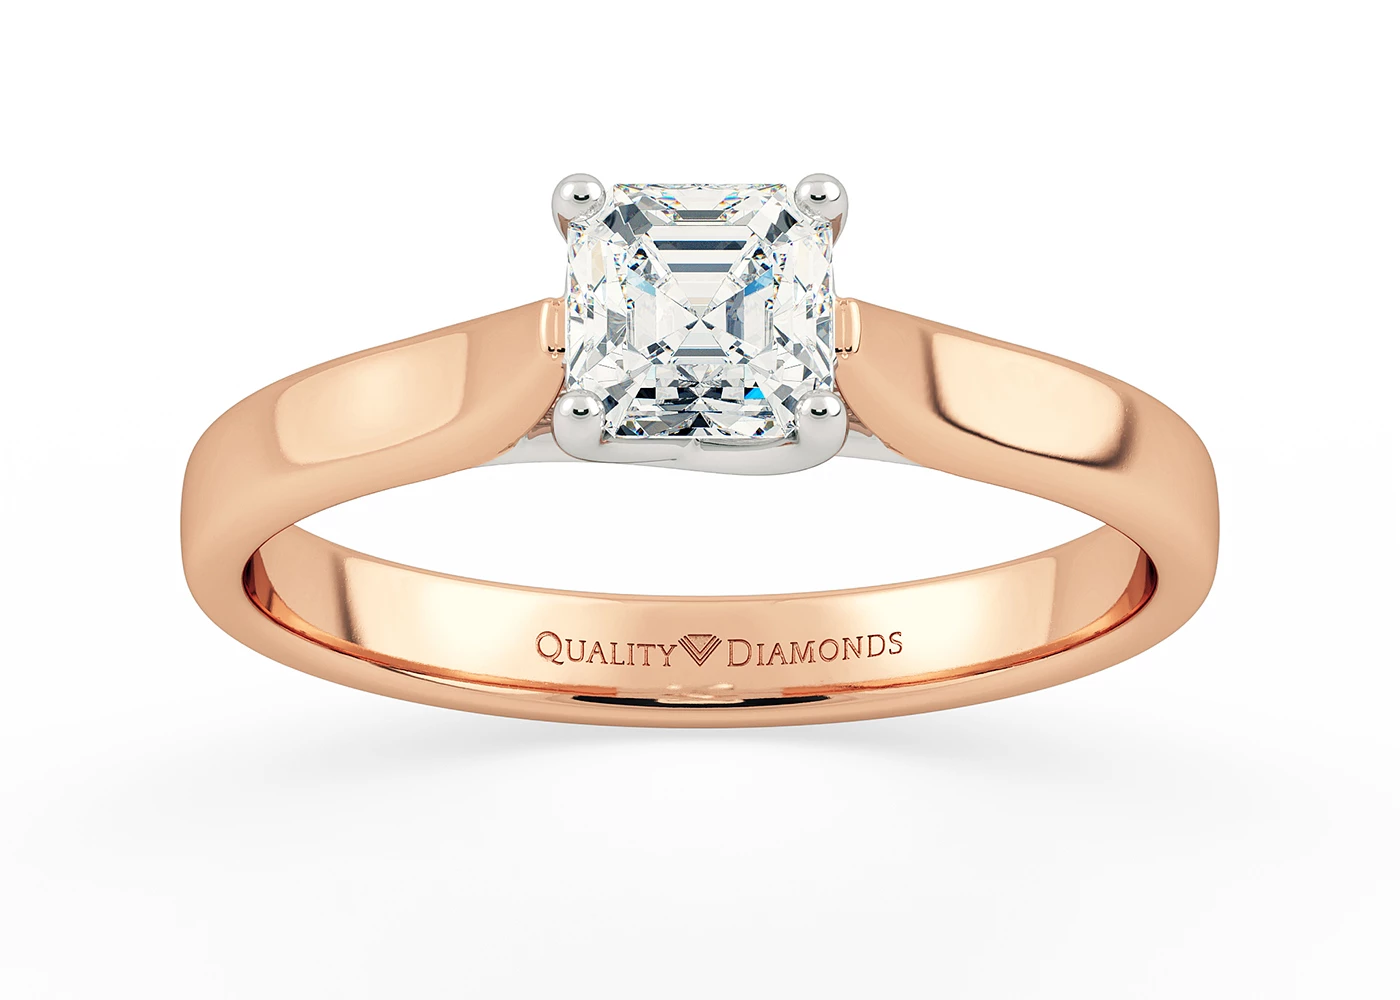 Asscher Mirabelle Diamond Ring in 9K Rose Gold